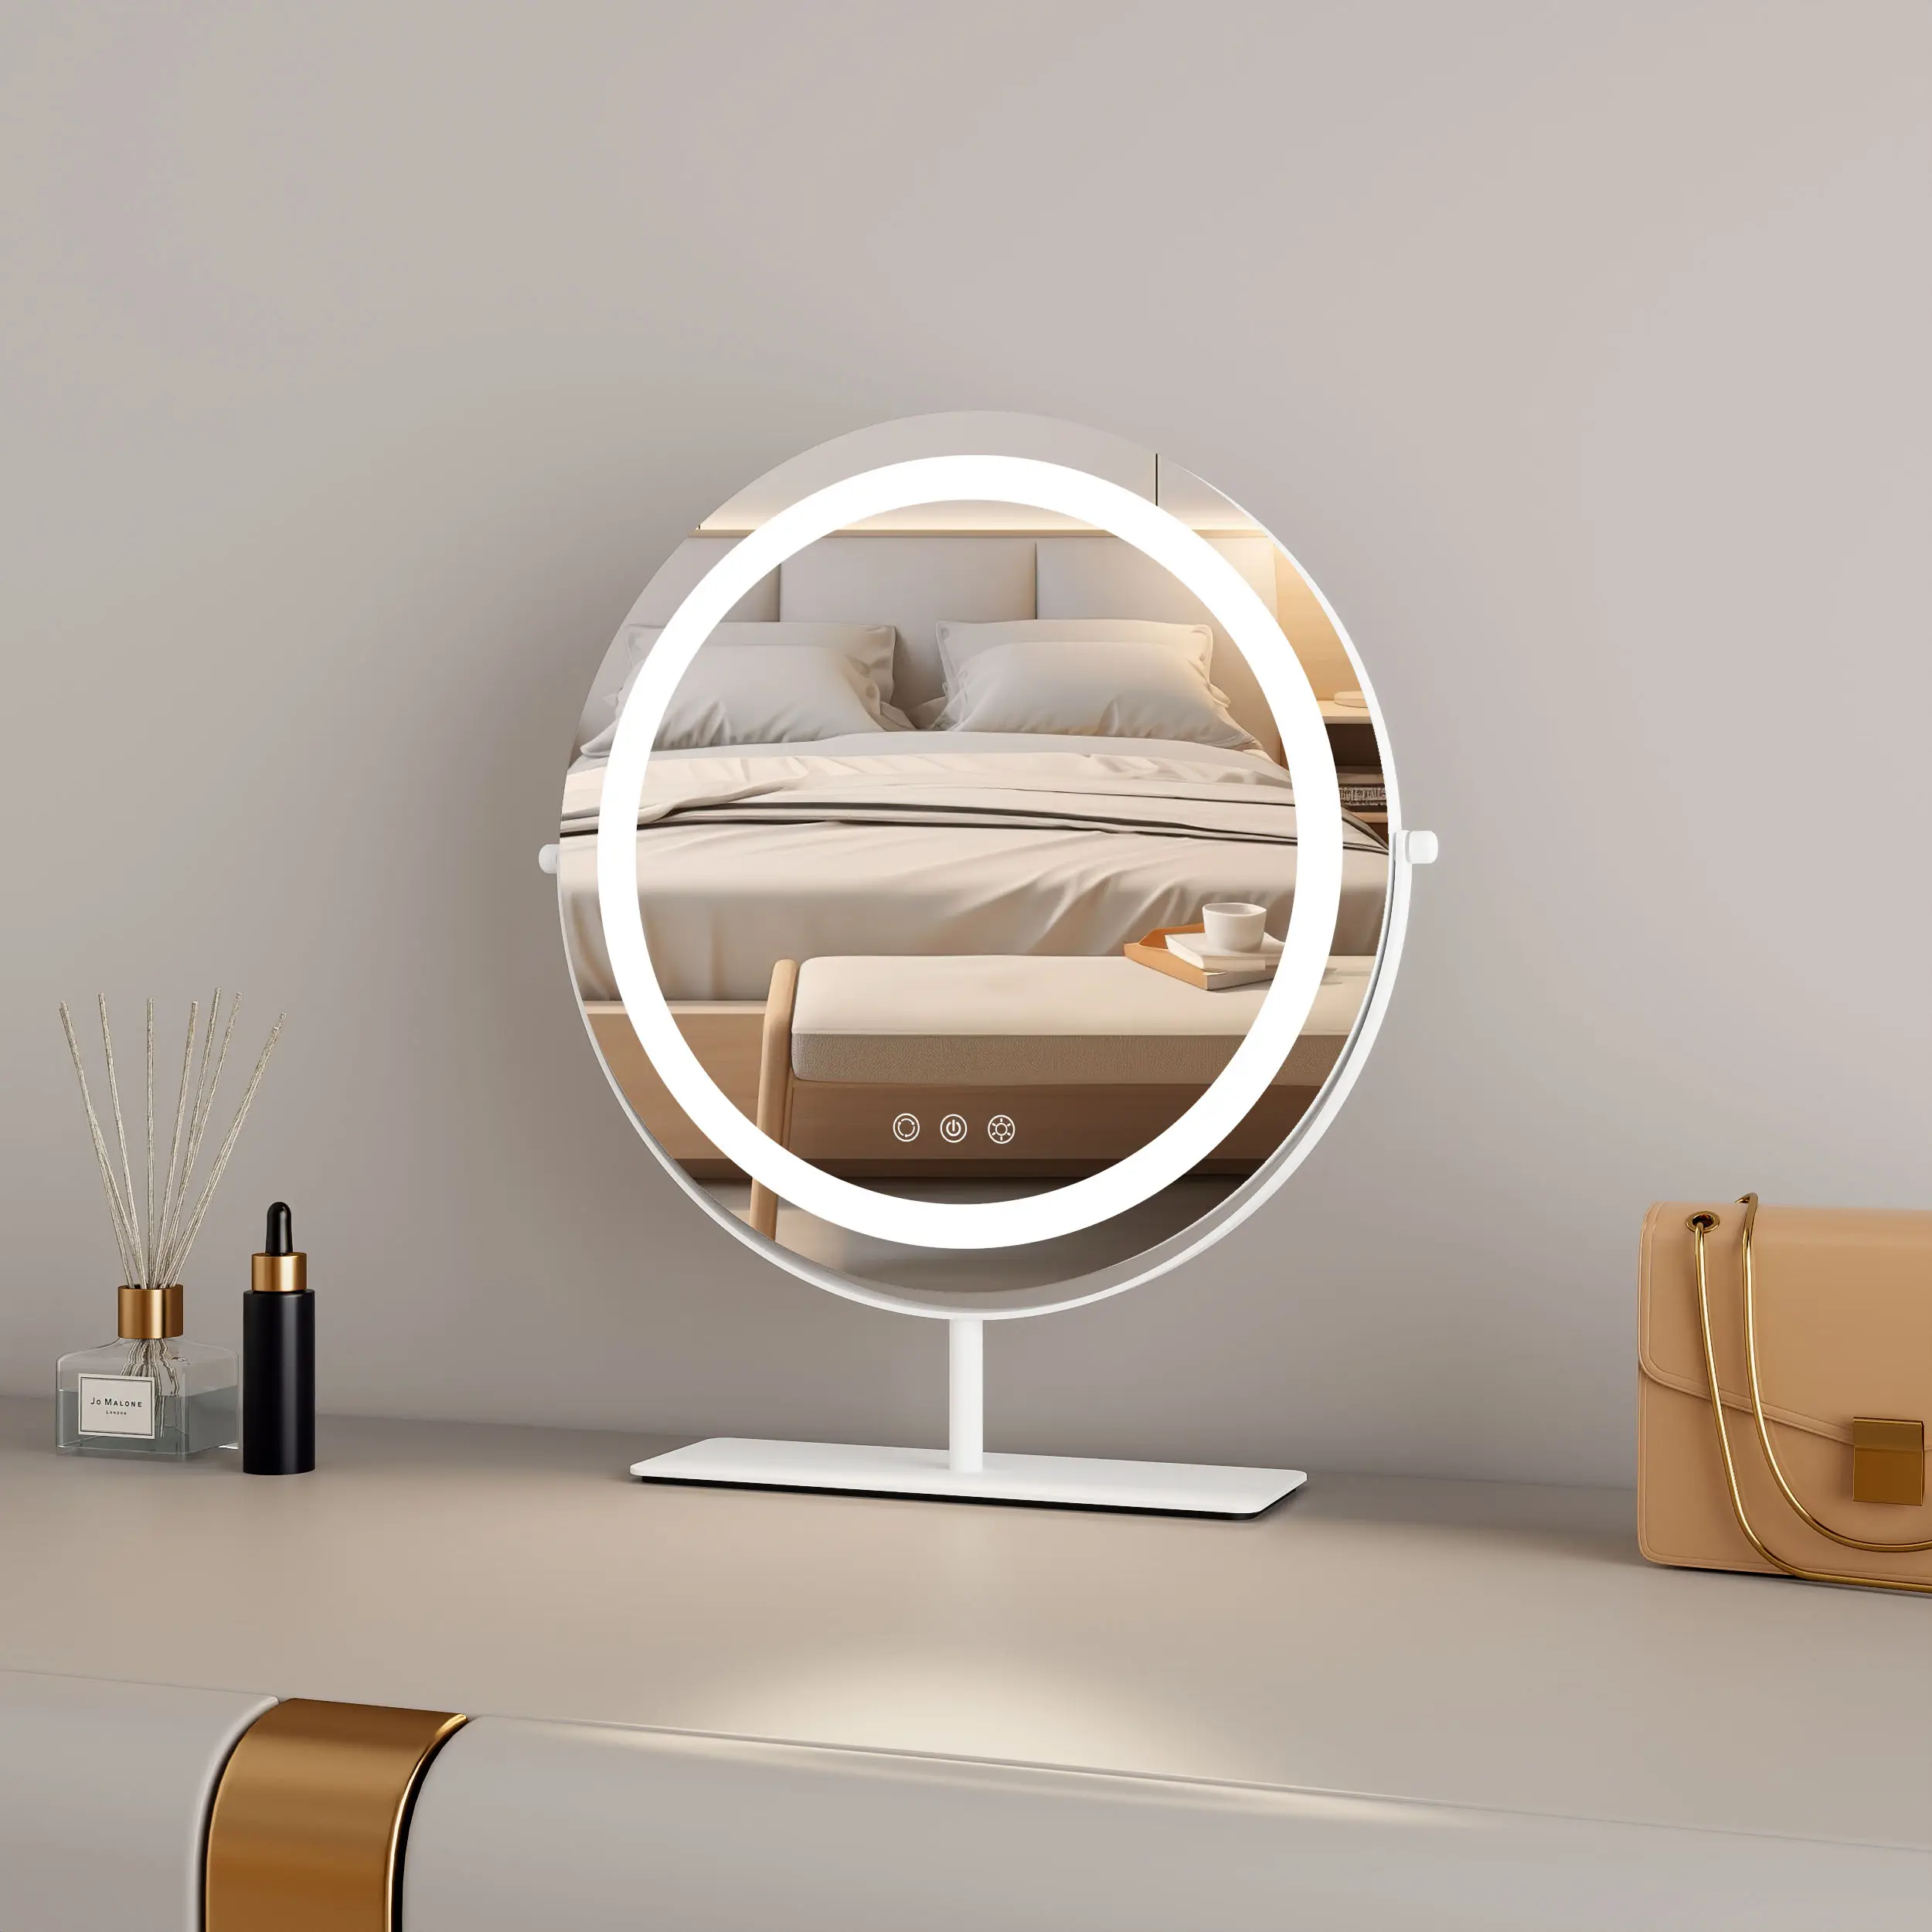 مرآة بوجه 360 بإضاءة 3 ألوان تدور من جهة التصنيع لوضع مستحضرات التجميل على الطاولة، مرآة لوضع مستحضرات التجميل على سطح المكتب مع إضاءة ليد